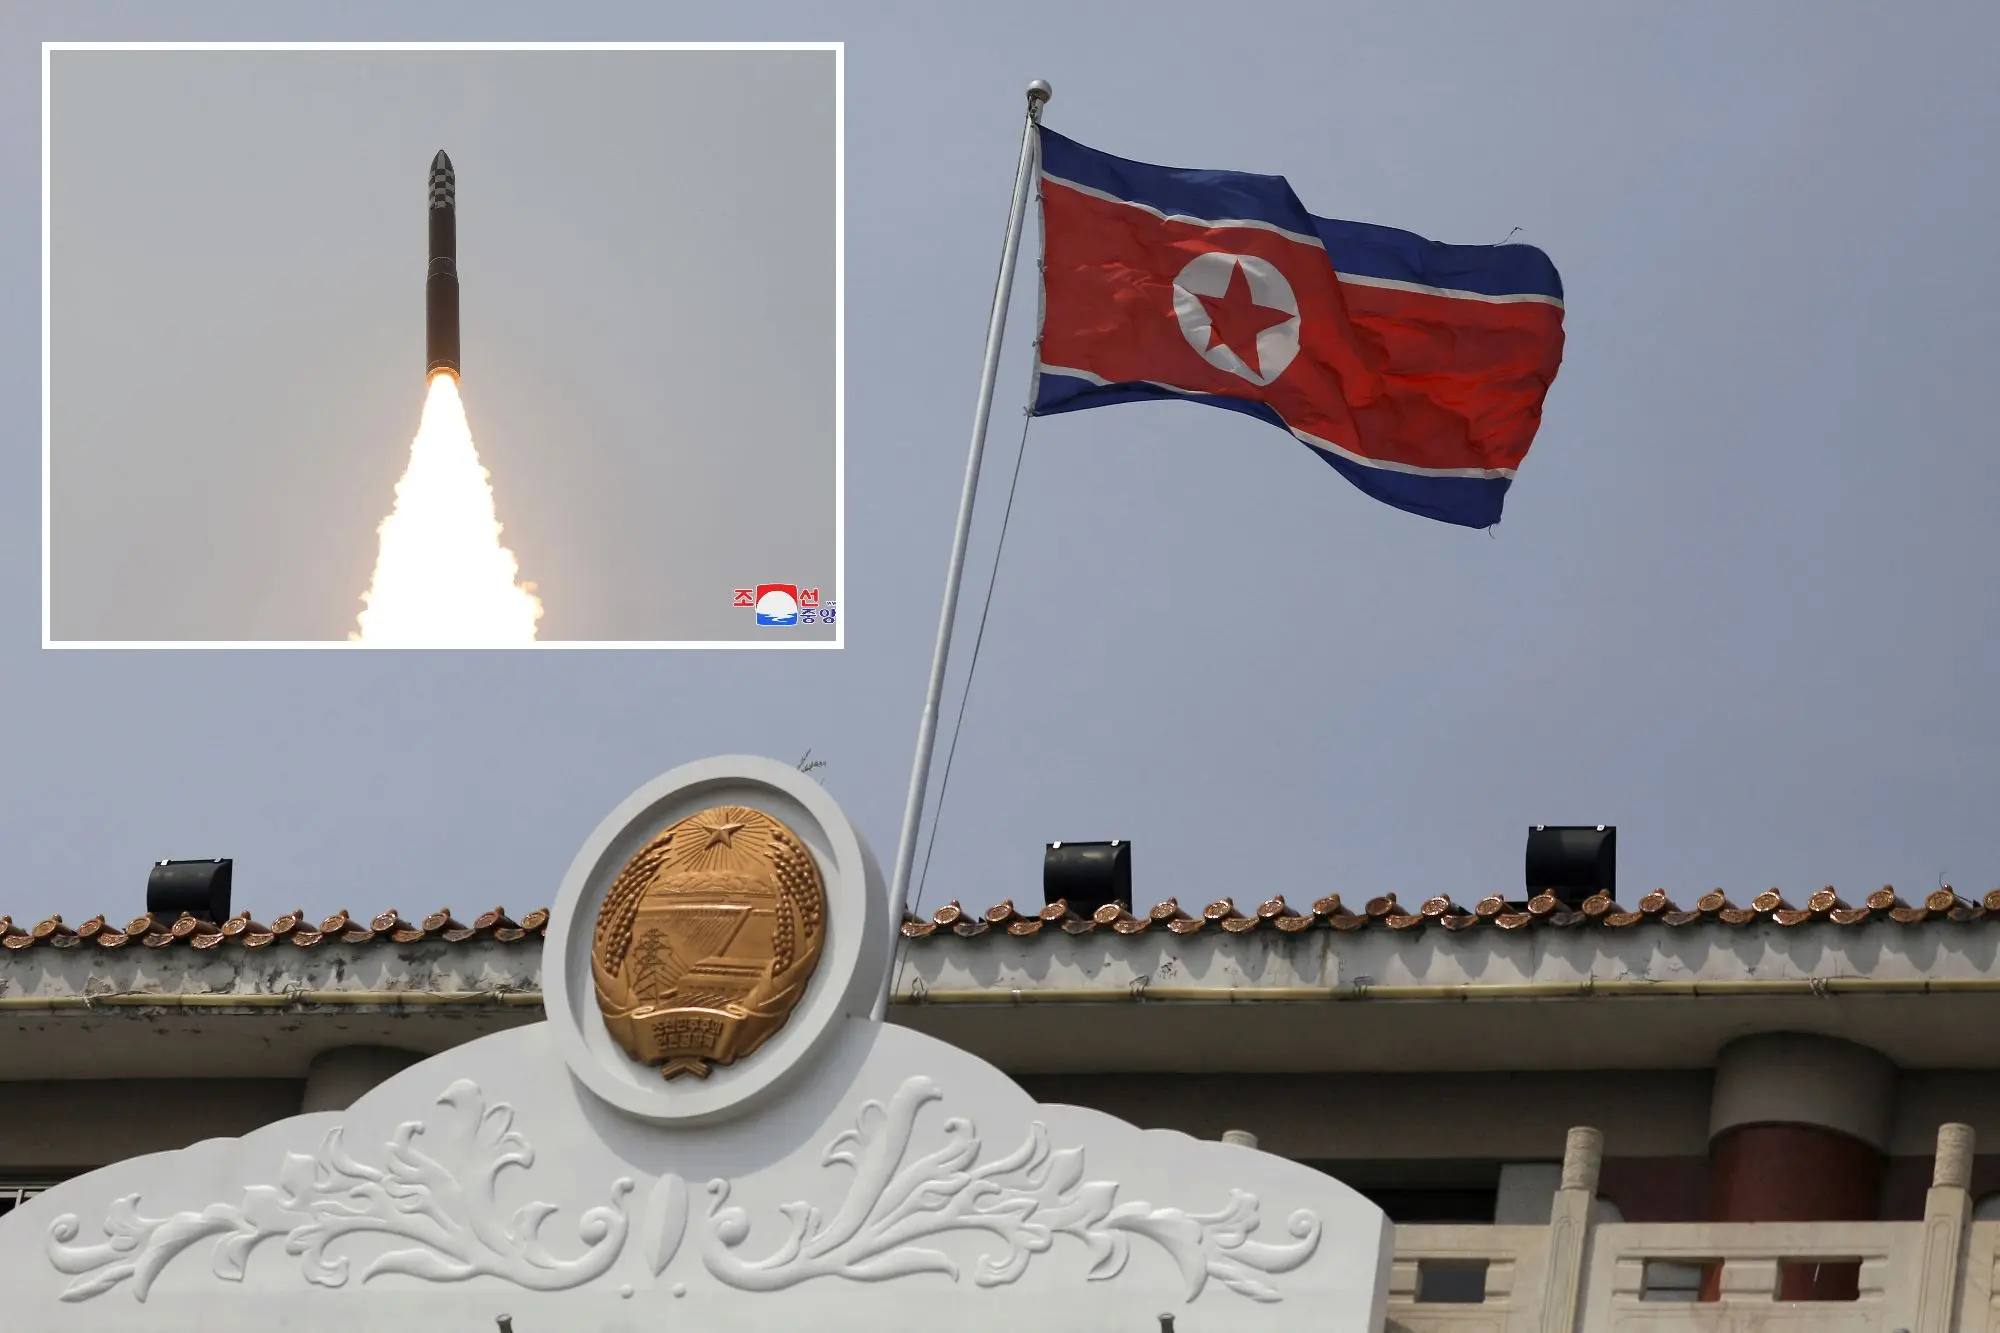 Για κατασκοπεία κατηγορεί η Βόρεια Κορέα τις ΗΠΑ - Απειλές για «σοκαριστικές συνέπειες»